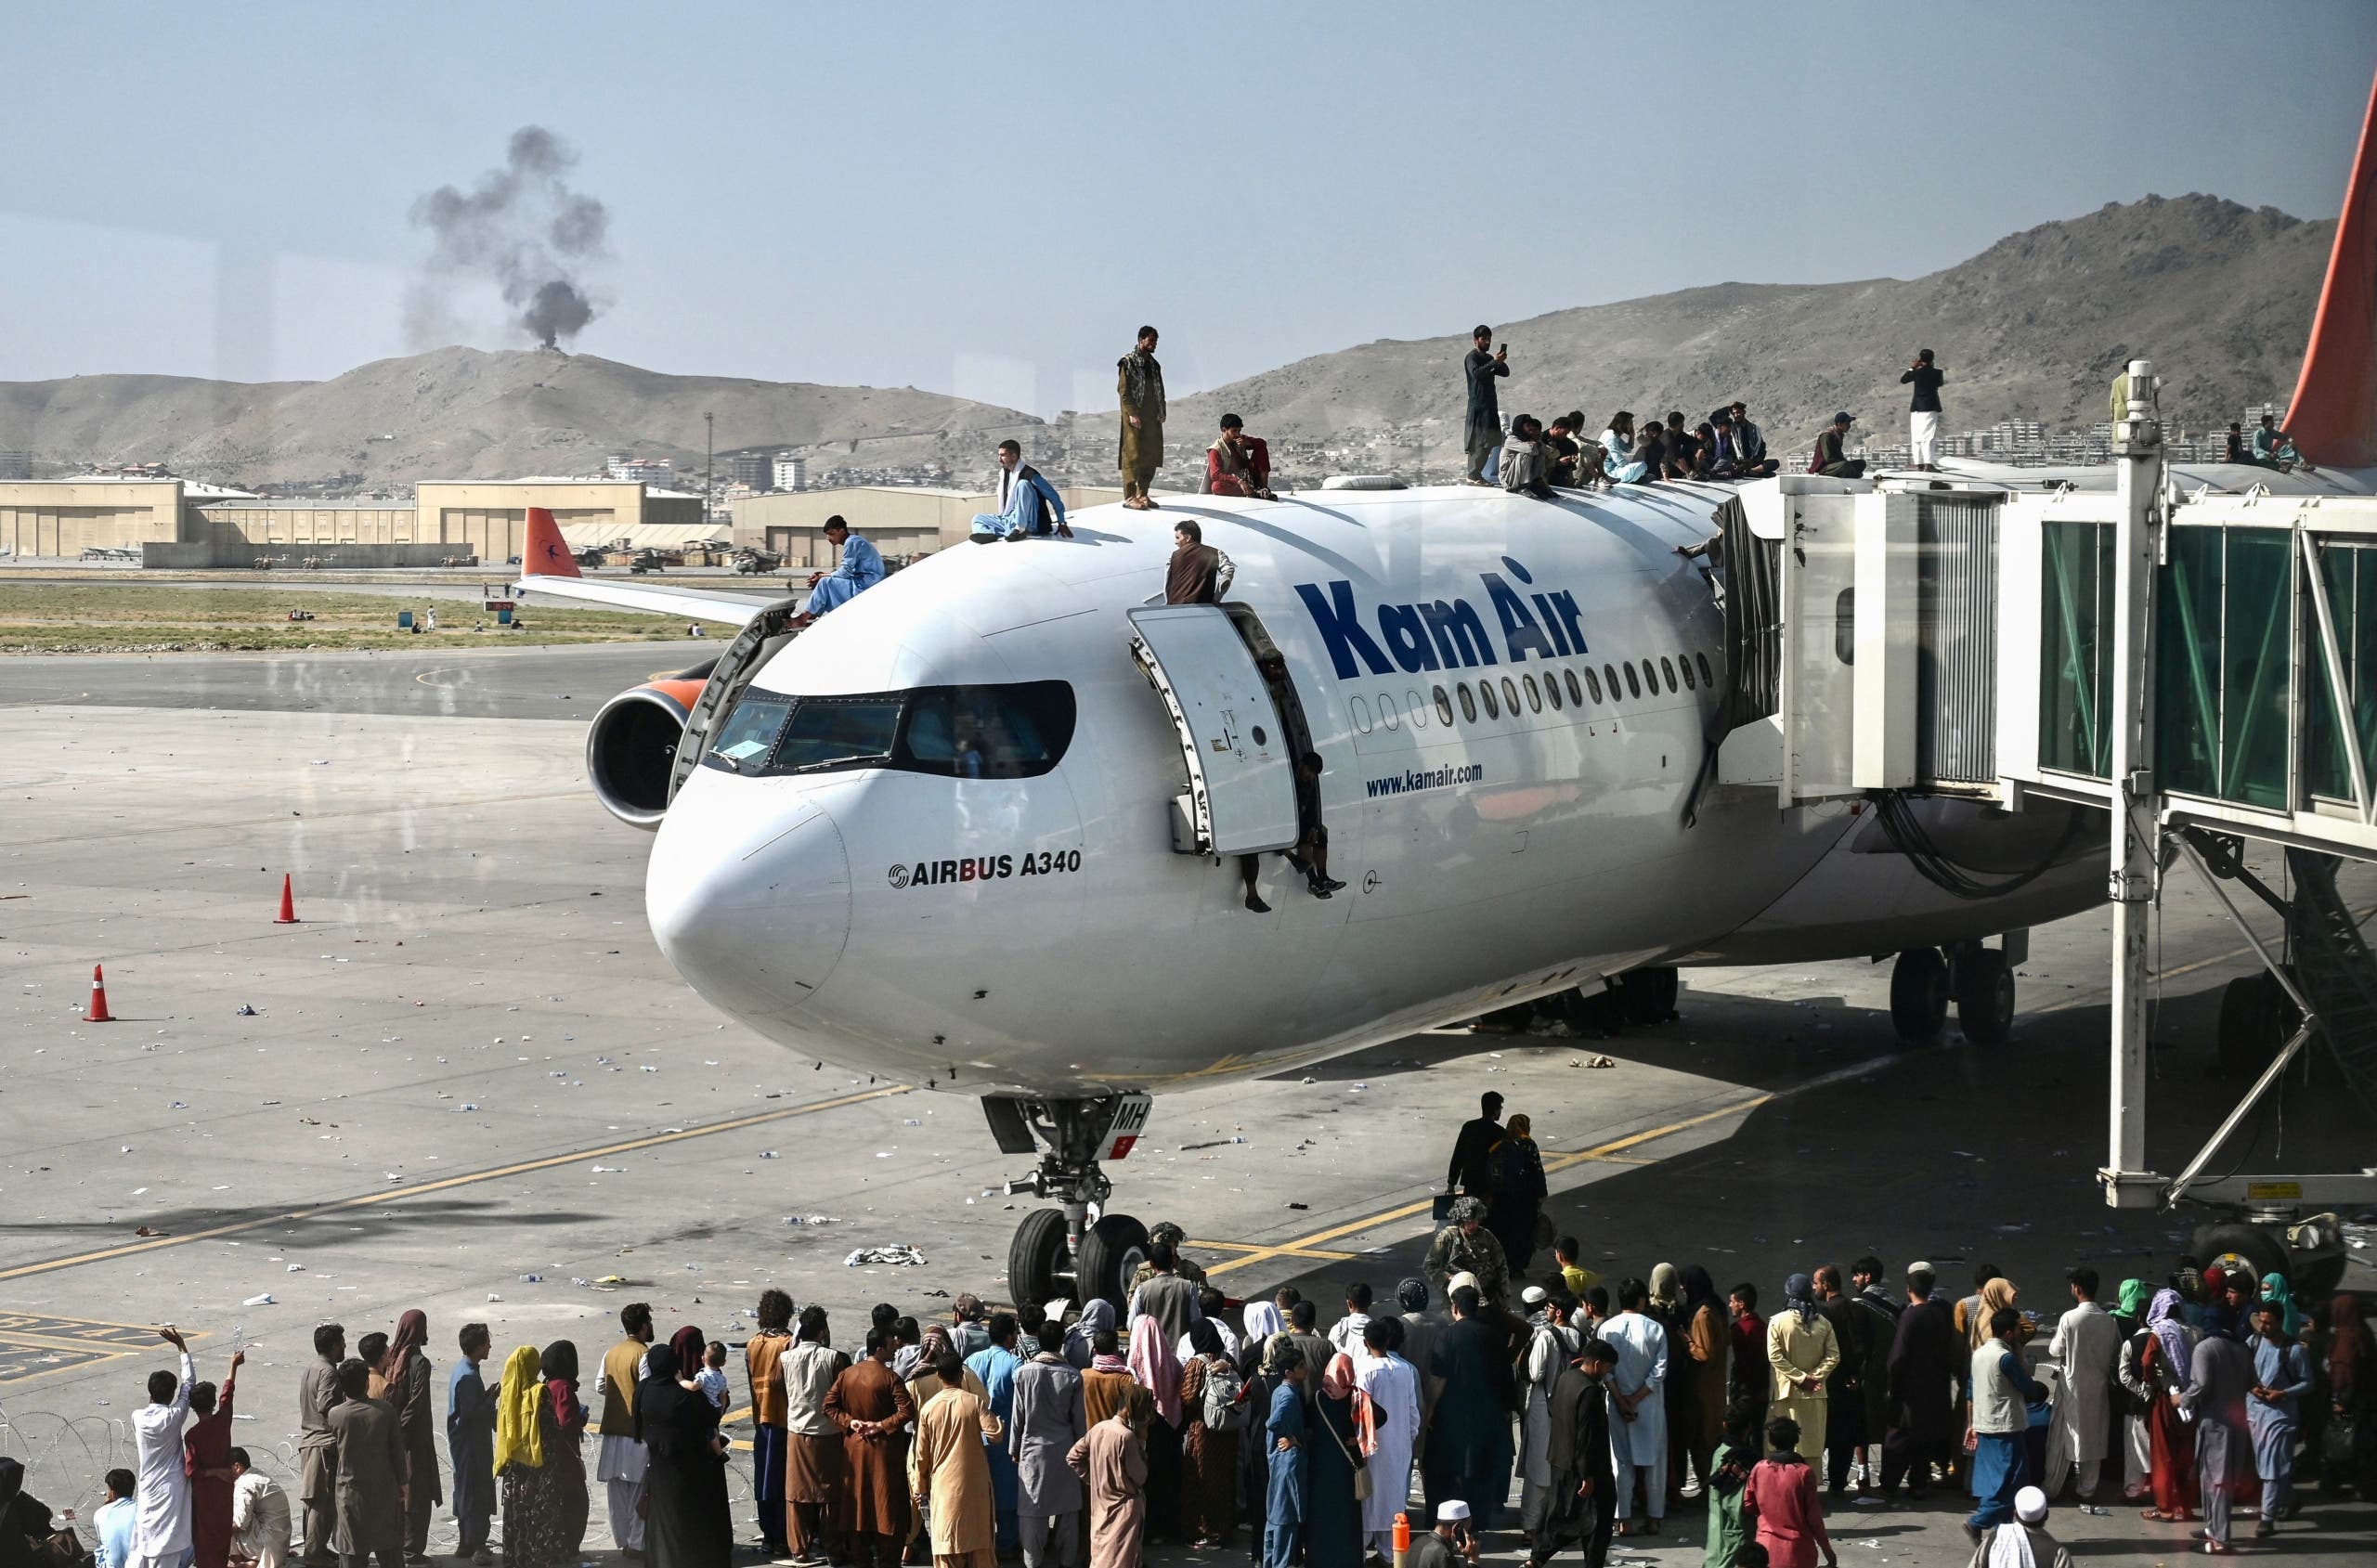 Operations Resume at Kabul Airport